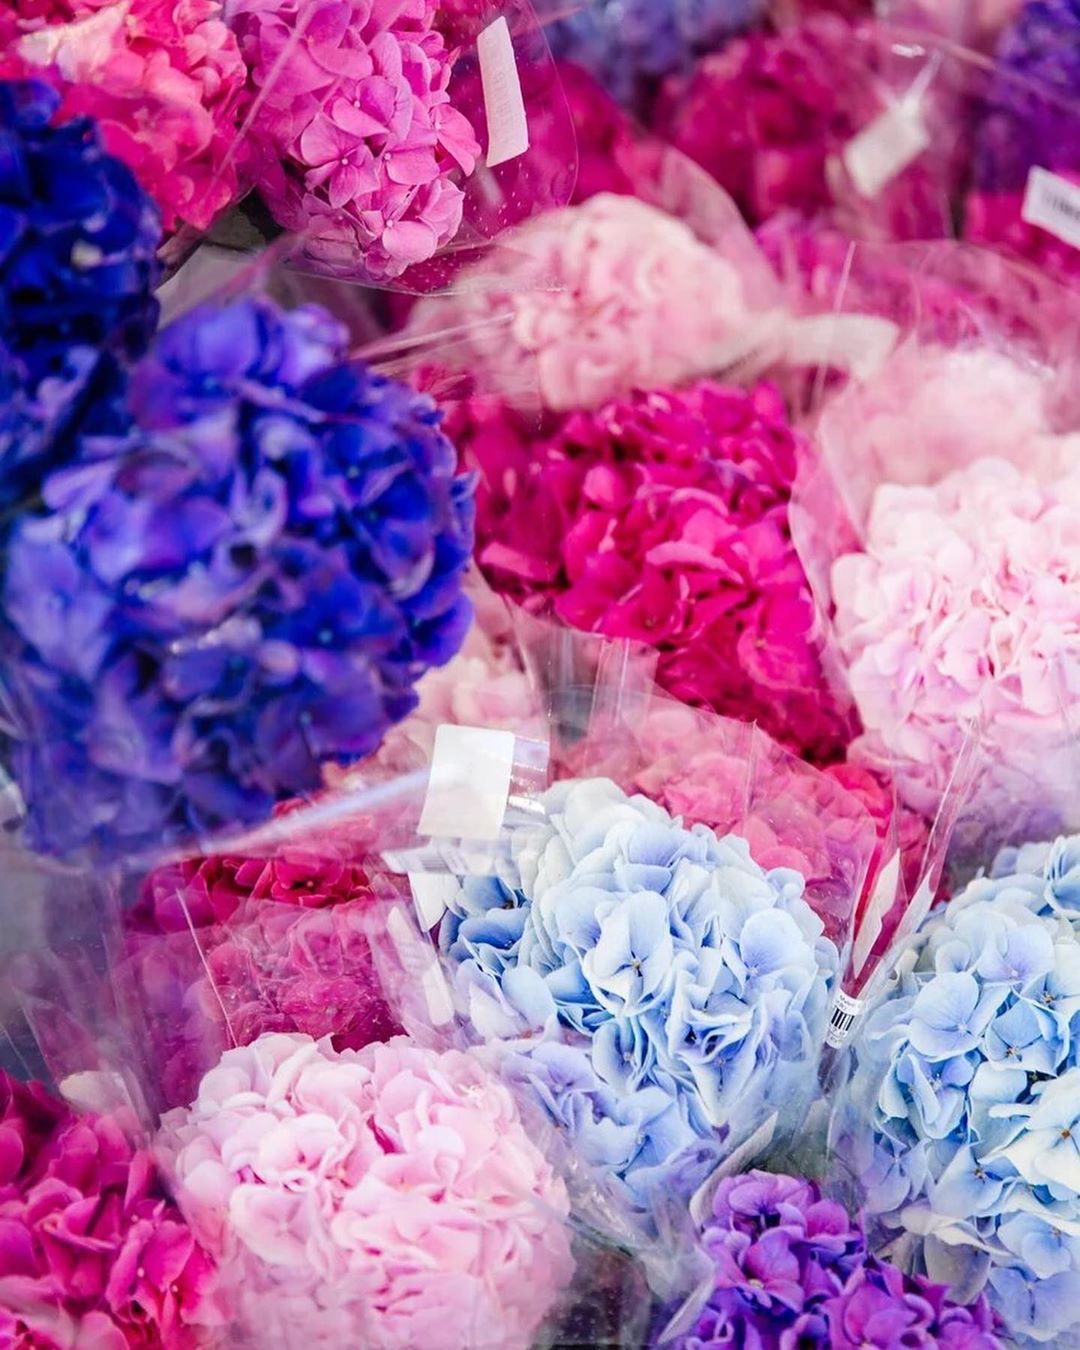 Гипермаркет цветов - Огромный выбор цветов , самые свежие поставки , на любой вкус и ценник 🙌🏼 

💕Весь мир в одном букете!
⠀
📍Запомните единственные необходимые контакты для заказа цветов:
⠀
📮direct:...